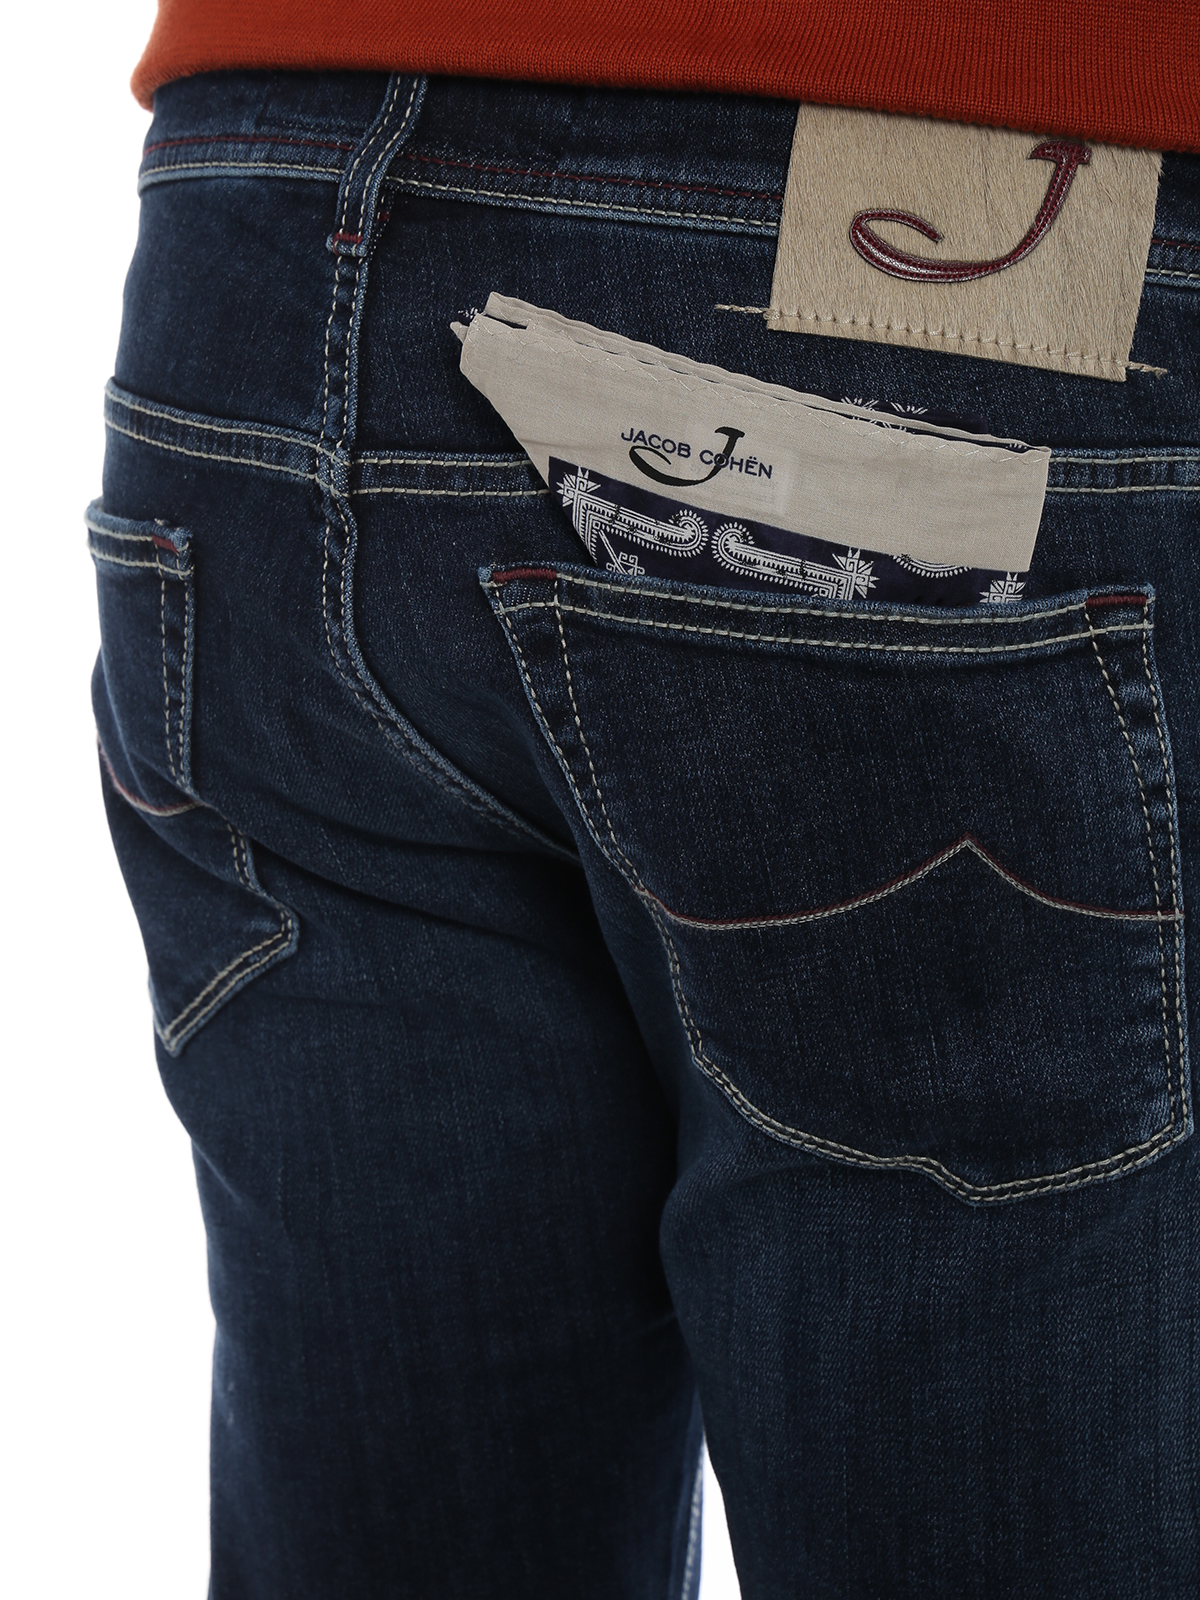 Skinny jeans Jacob Cohen - Style 613 stretch denim jeans - PW613COMF00709W2